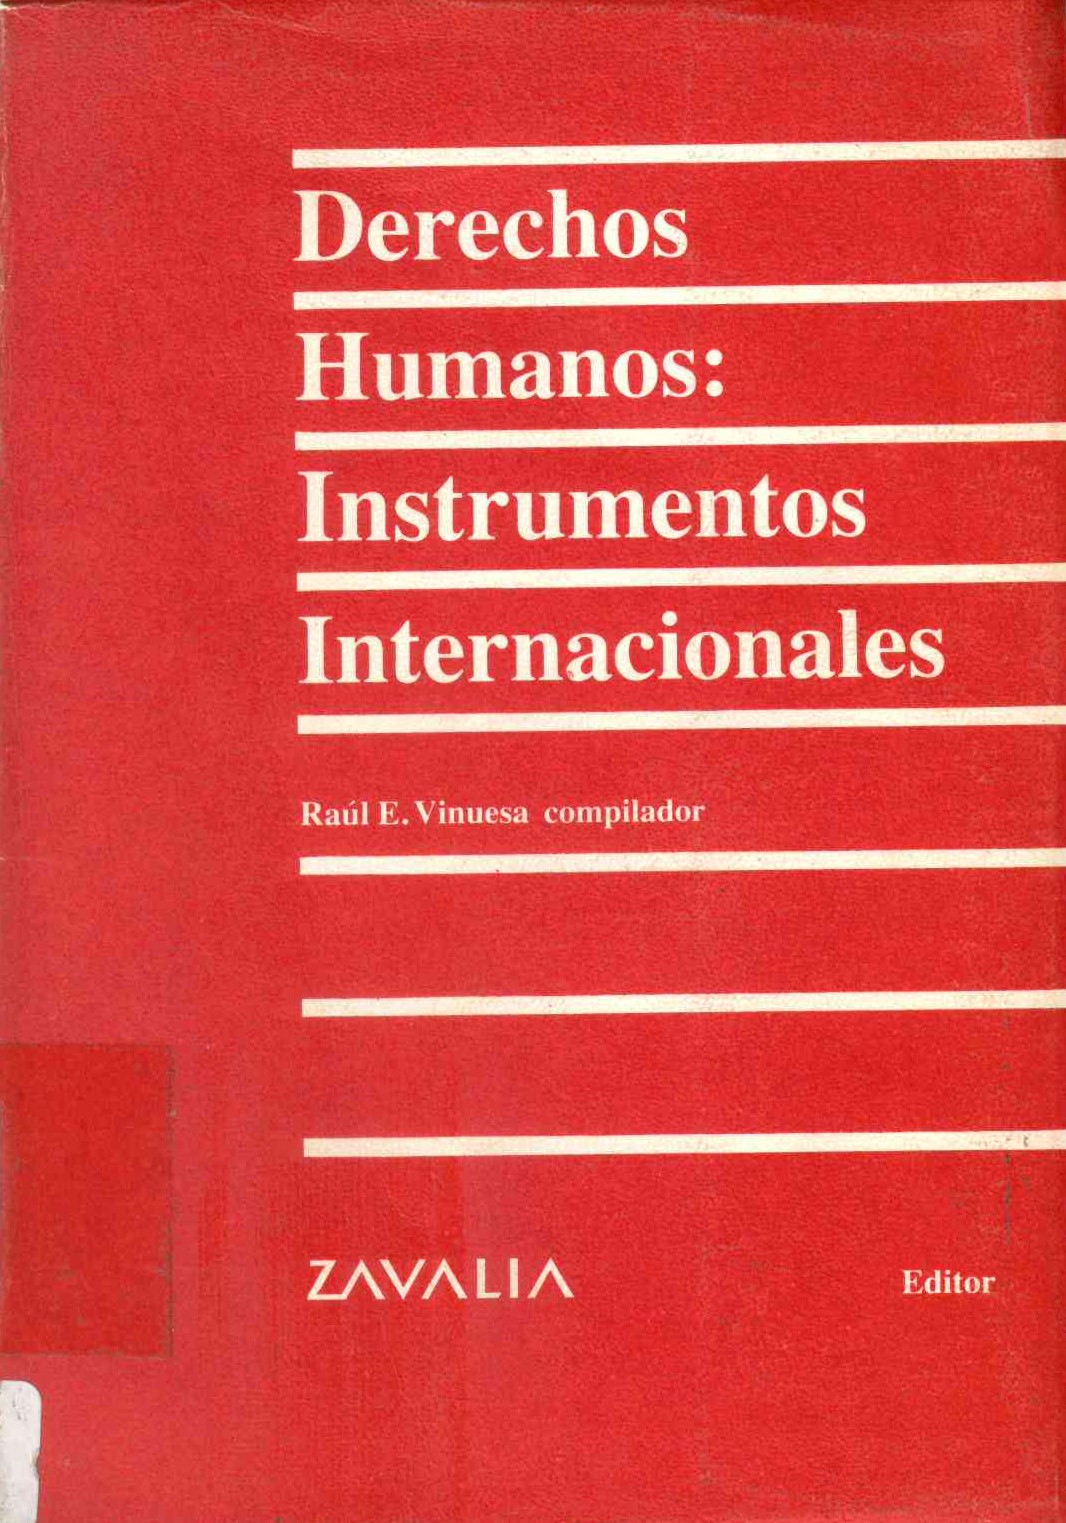 Derechos humanos: instrumentos internacionales